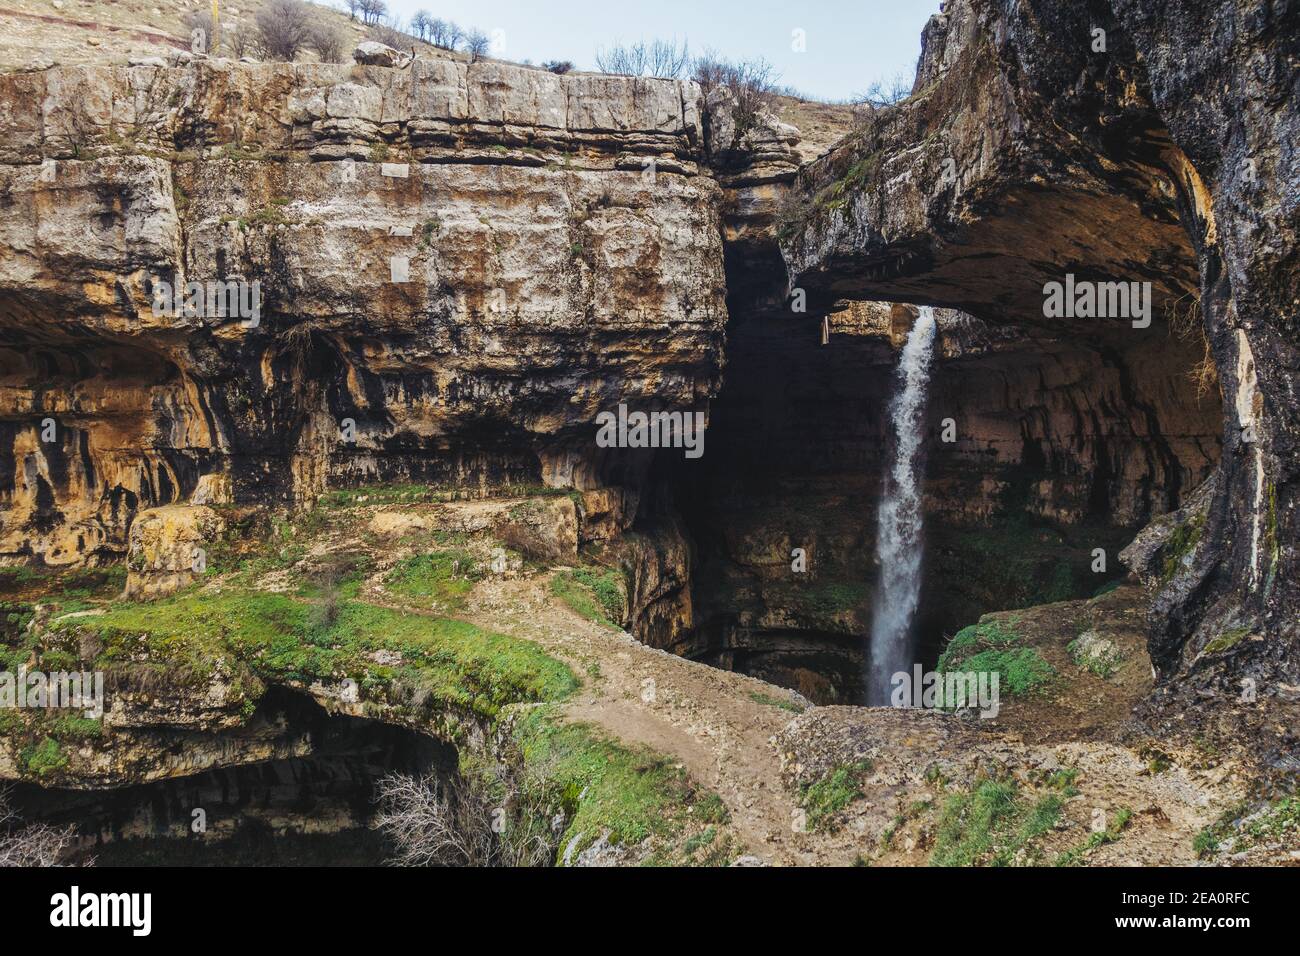 Chute d'eau de la gorge de Baatara, chute de 255 mètres dans le Pothole de Balaa, Tannourine, Liban Banque D'Images